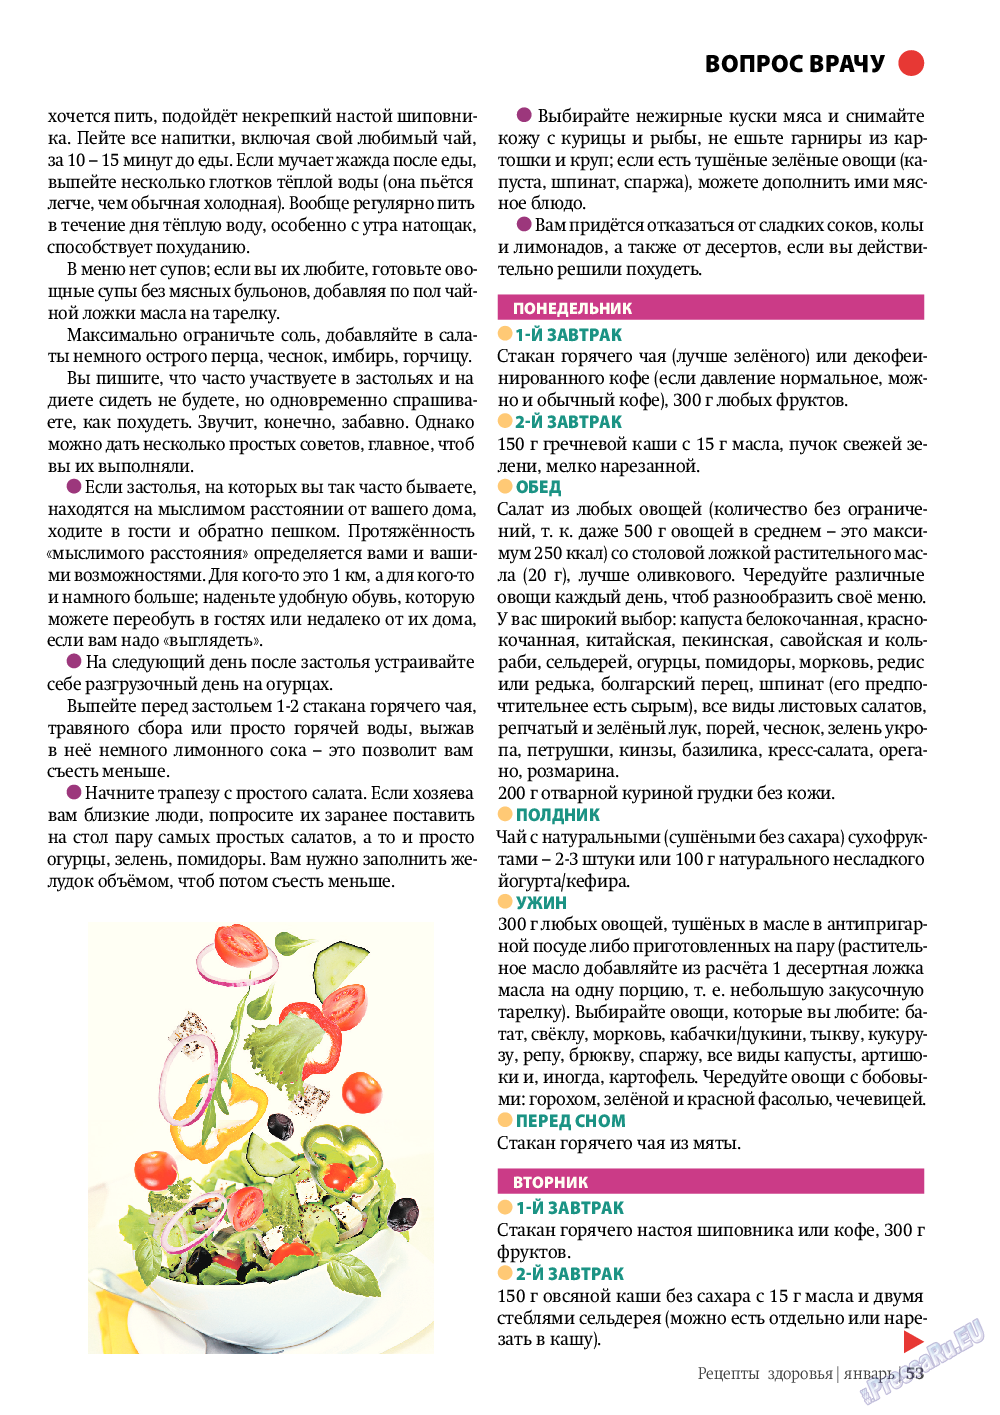 Рецепты здоровья, журнал. 2012 №1 стр.53